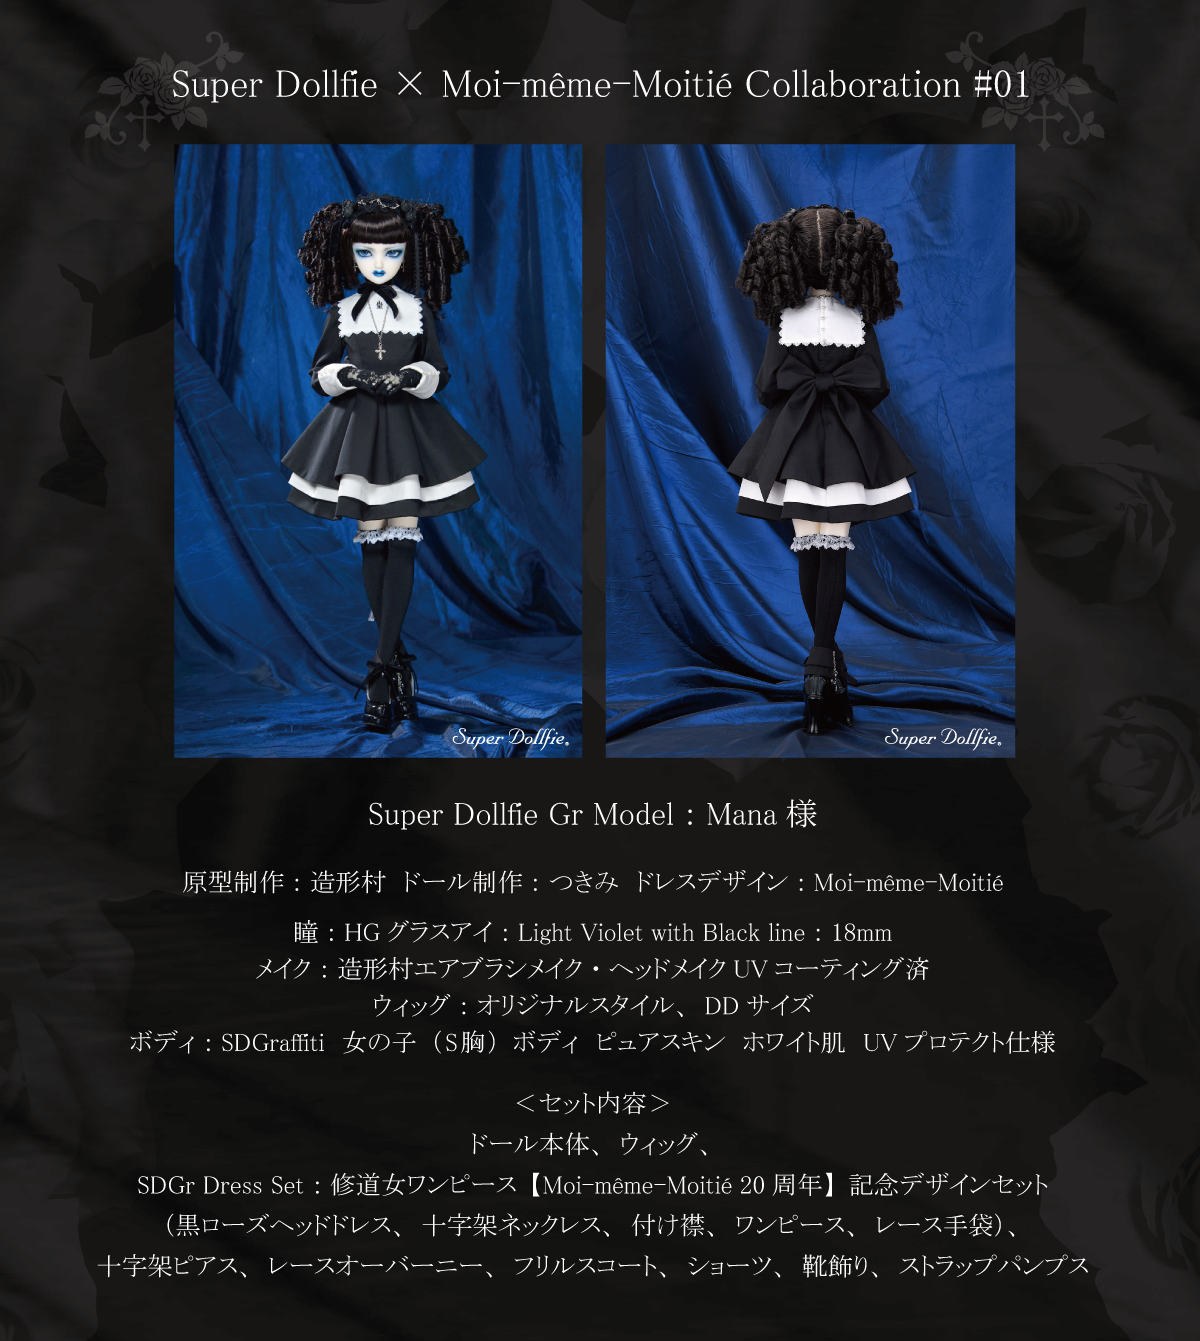 Super Dollfie × Moi-même-Moitié collaboration – Moi-meme-Moitie